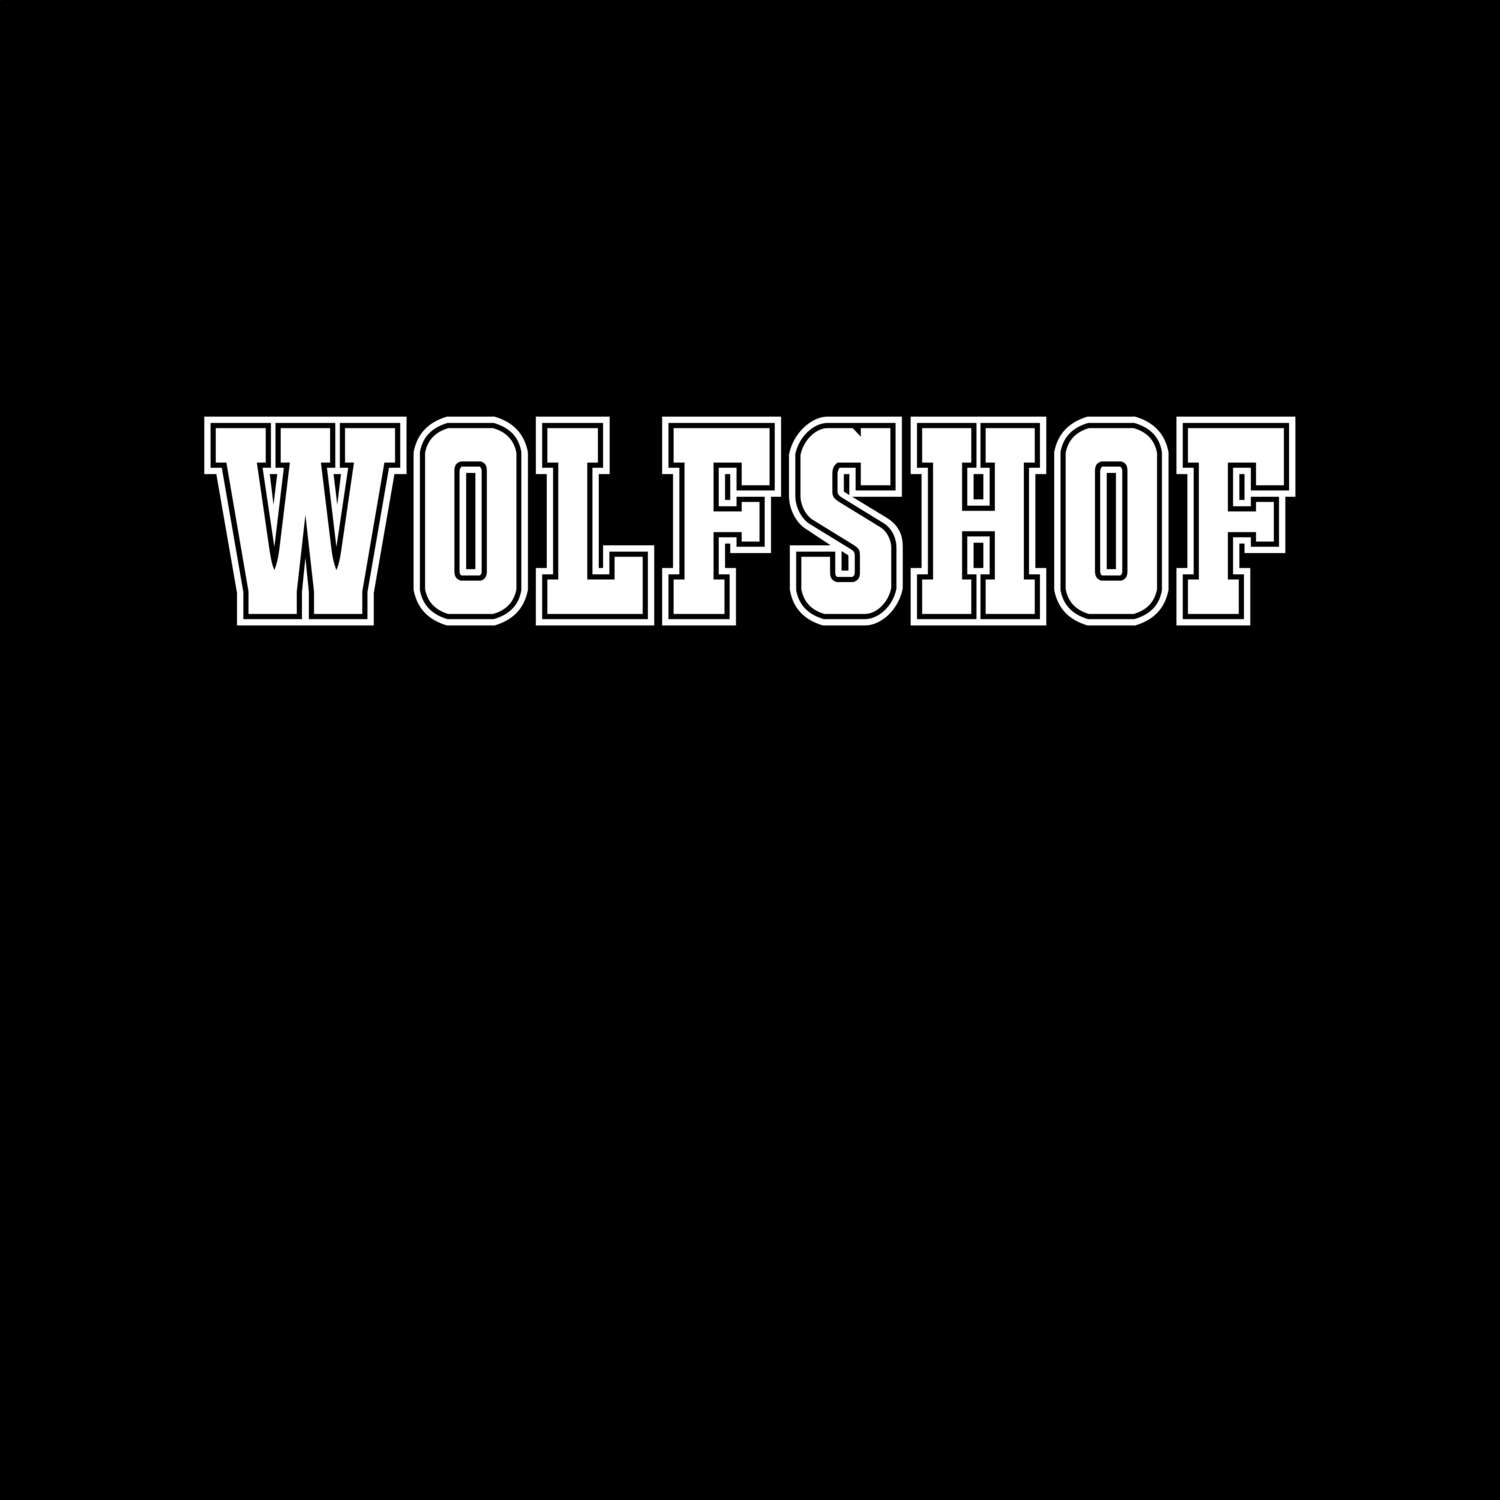 Wolfshof T-Shirt »Classic«